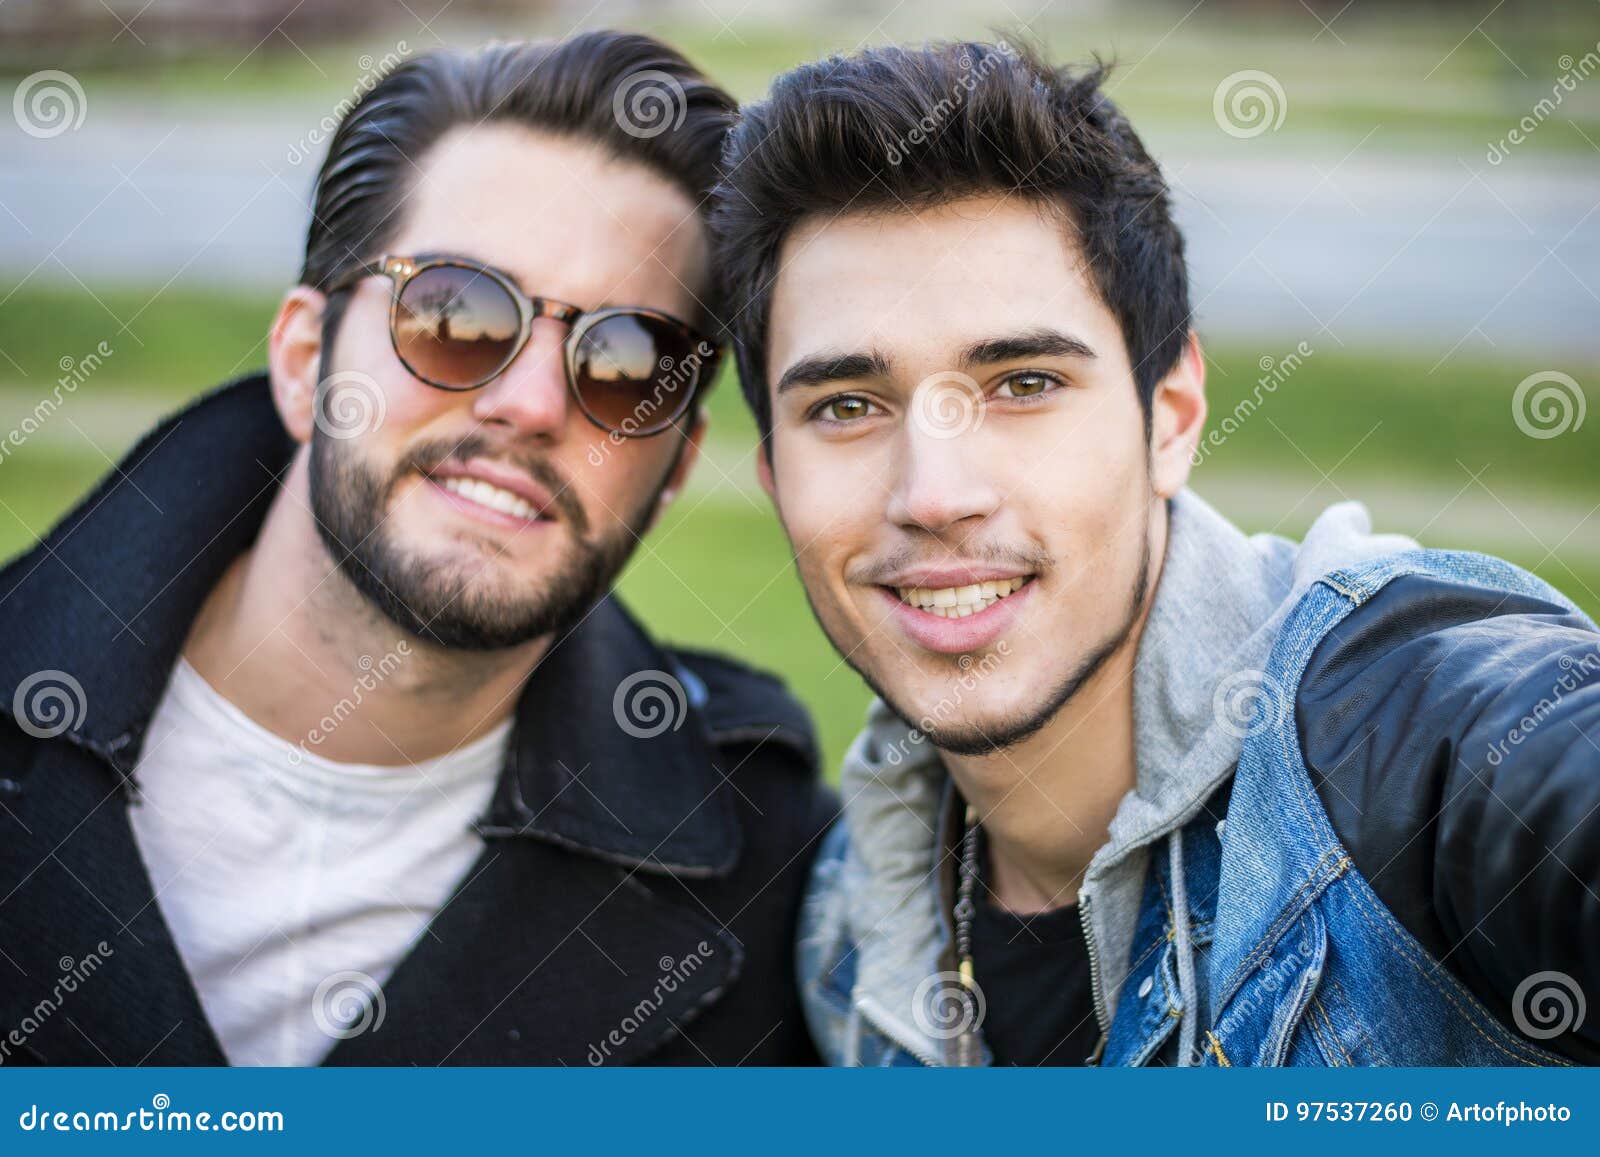 Junge männer selfie